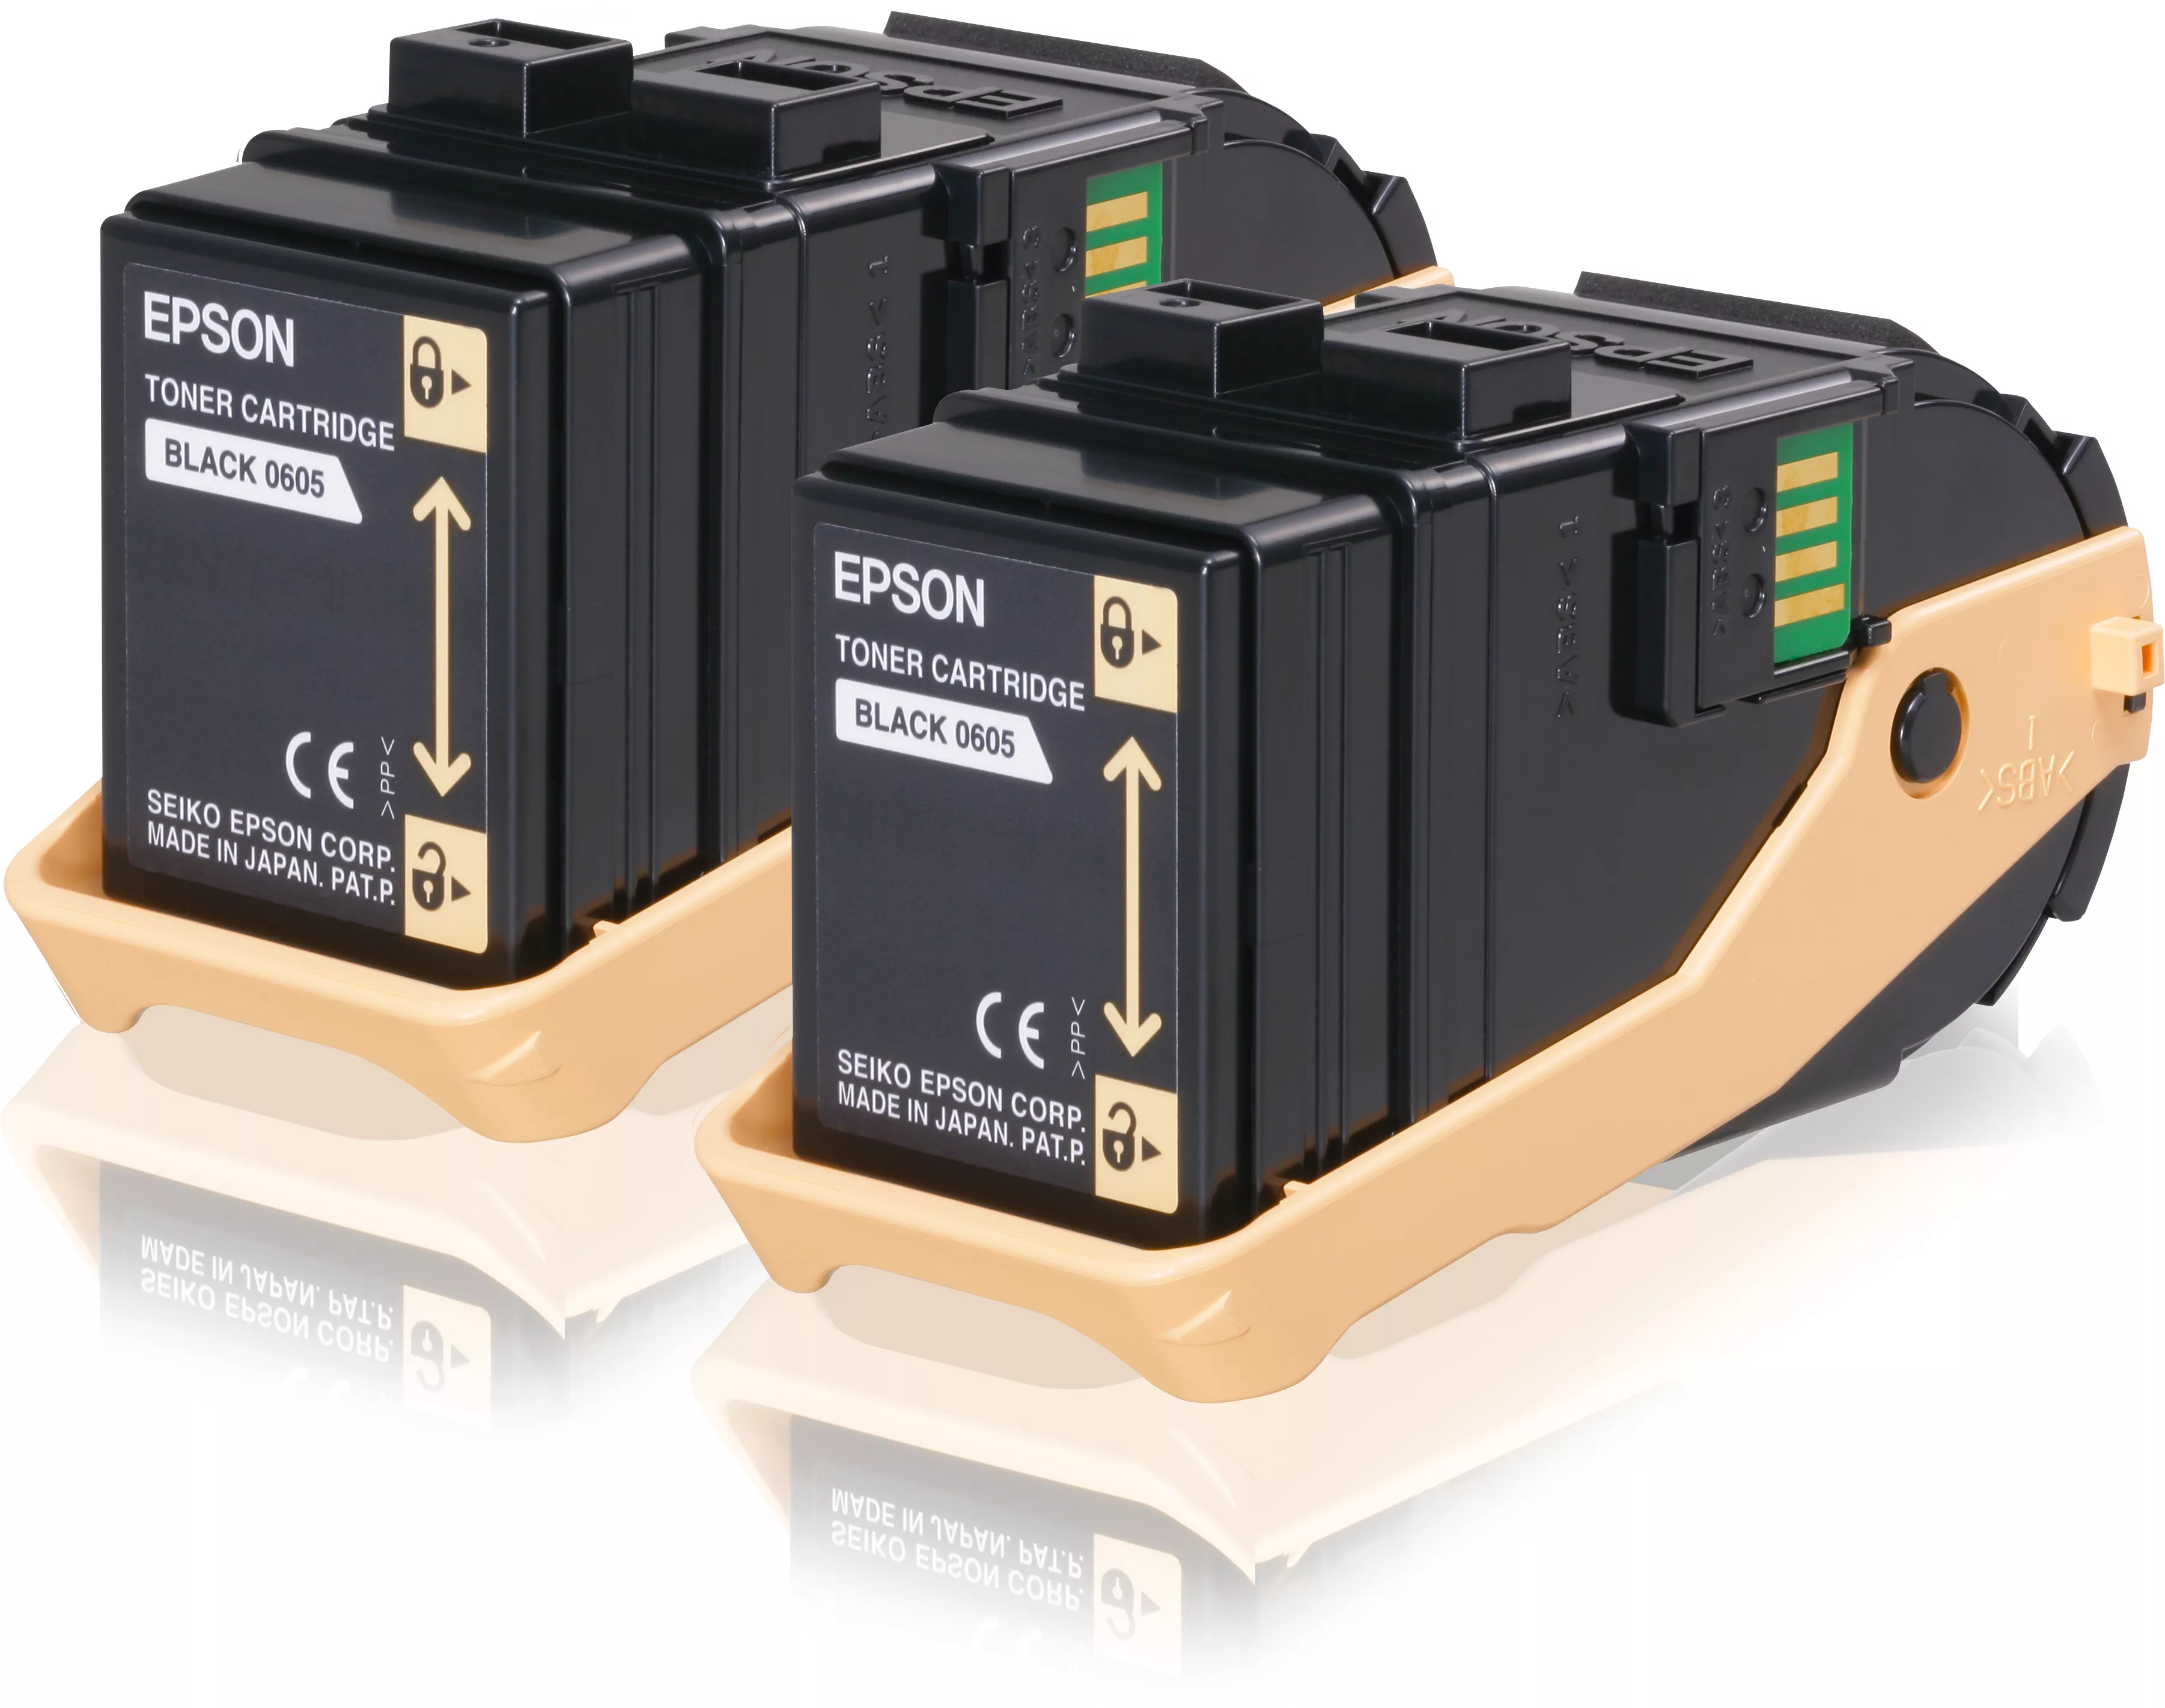 Achat EPSON AL-C9300N cartouche de toner noir capacité standard et autres produits de la marque Epson